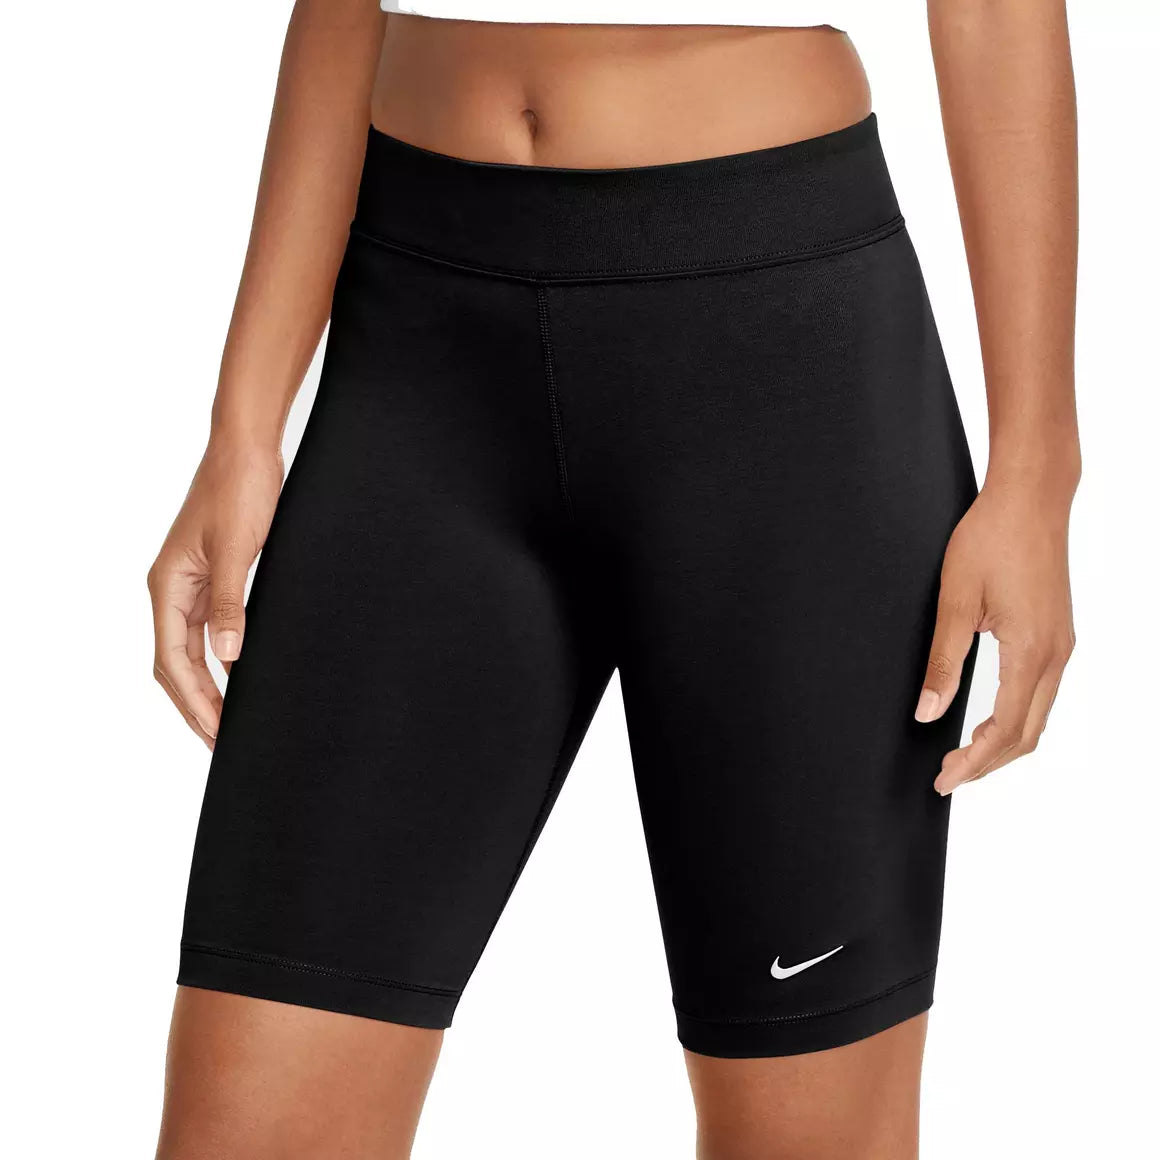 Nike Women's Sportswear Bike Shorts "'Black"